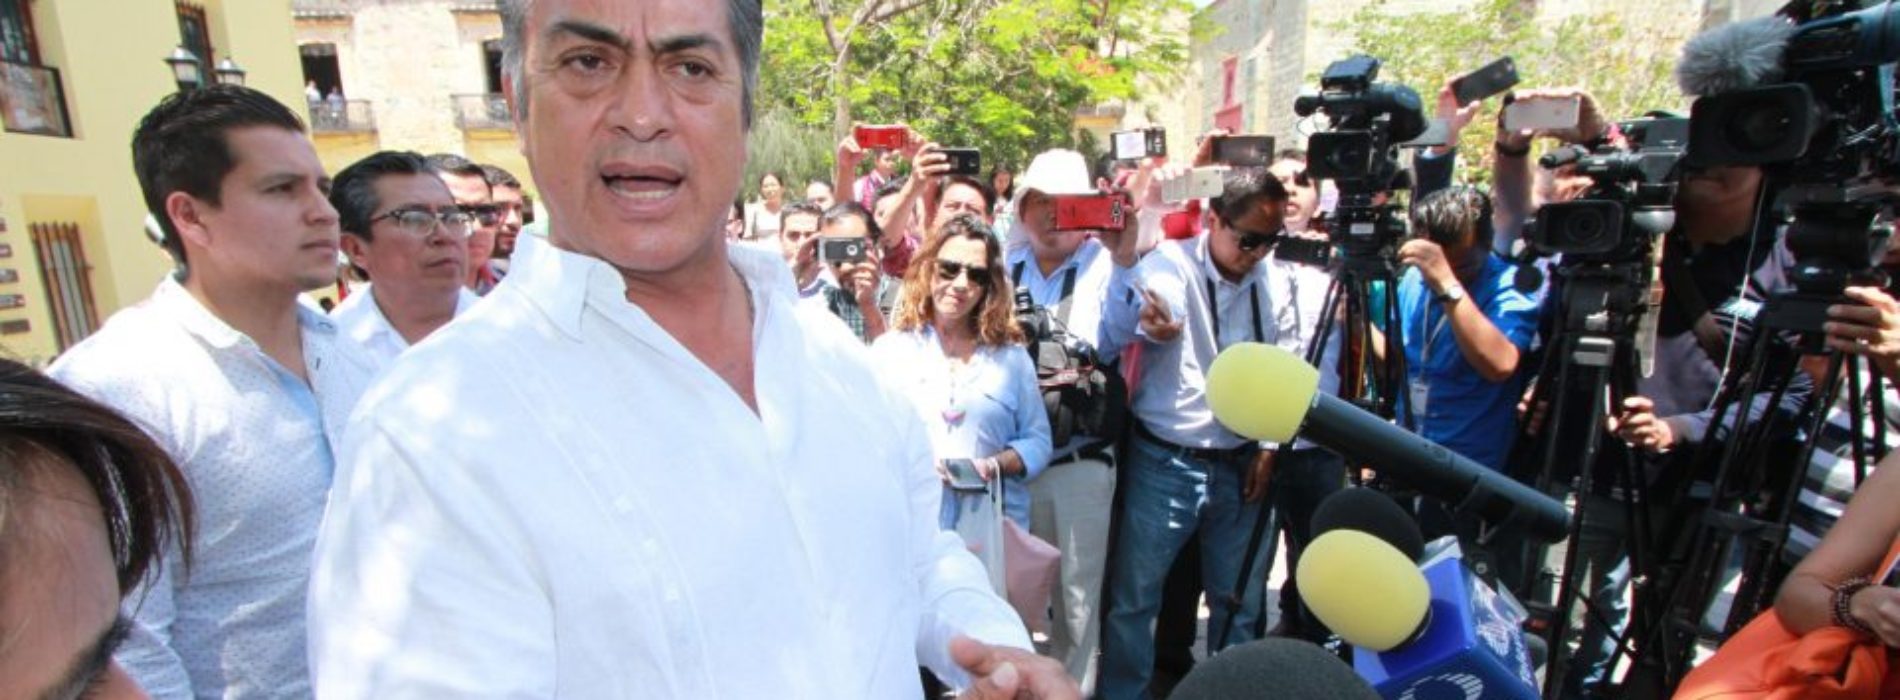 Jaime Rodríguez, El Bronco, pide ayuda a seguidores para
delimitar los temas del debate